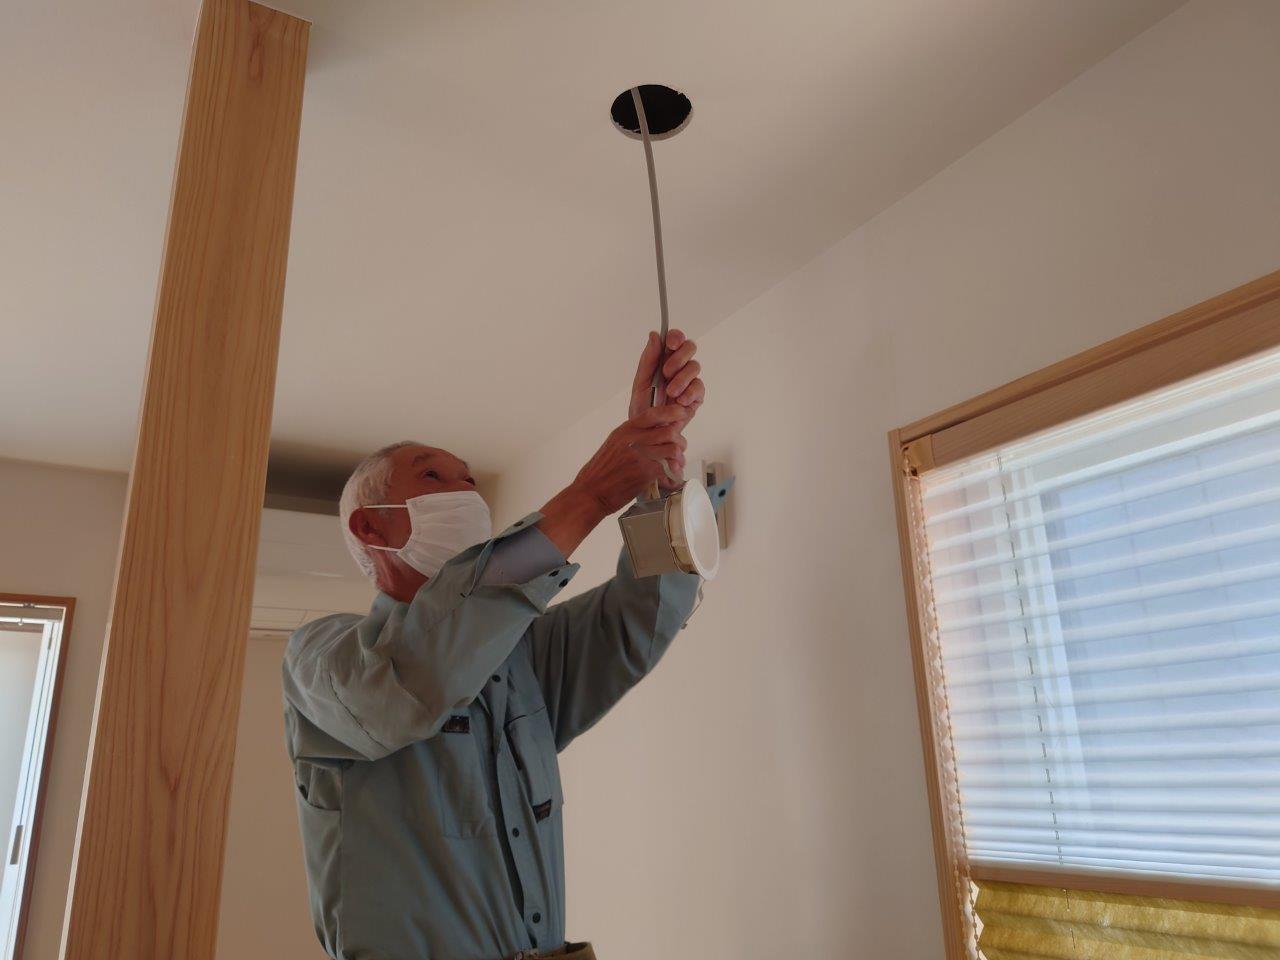 天井照明器具追加工事